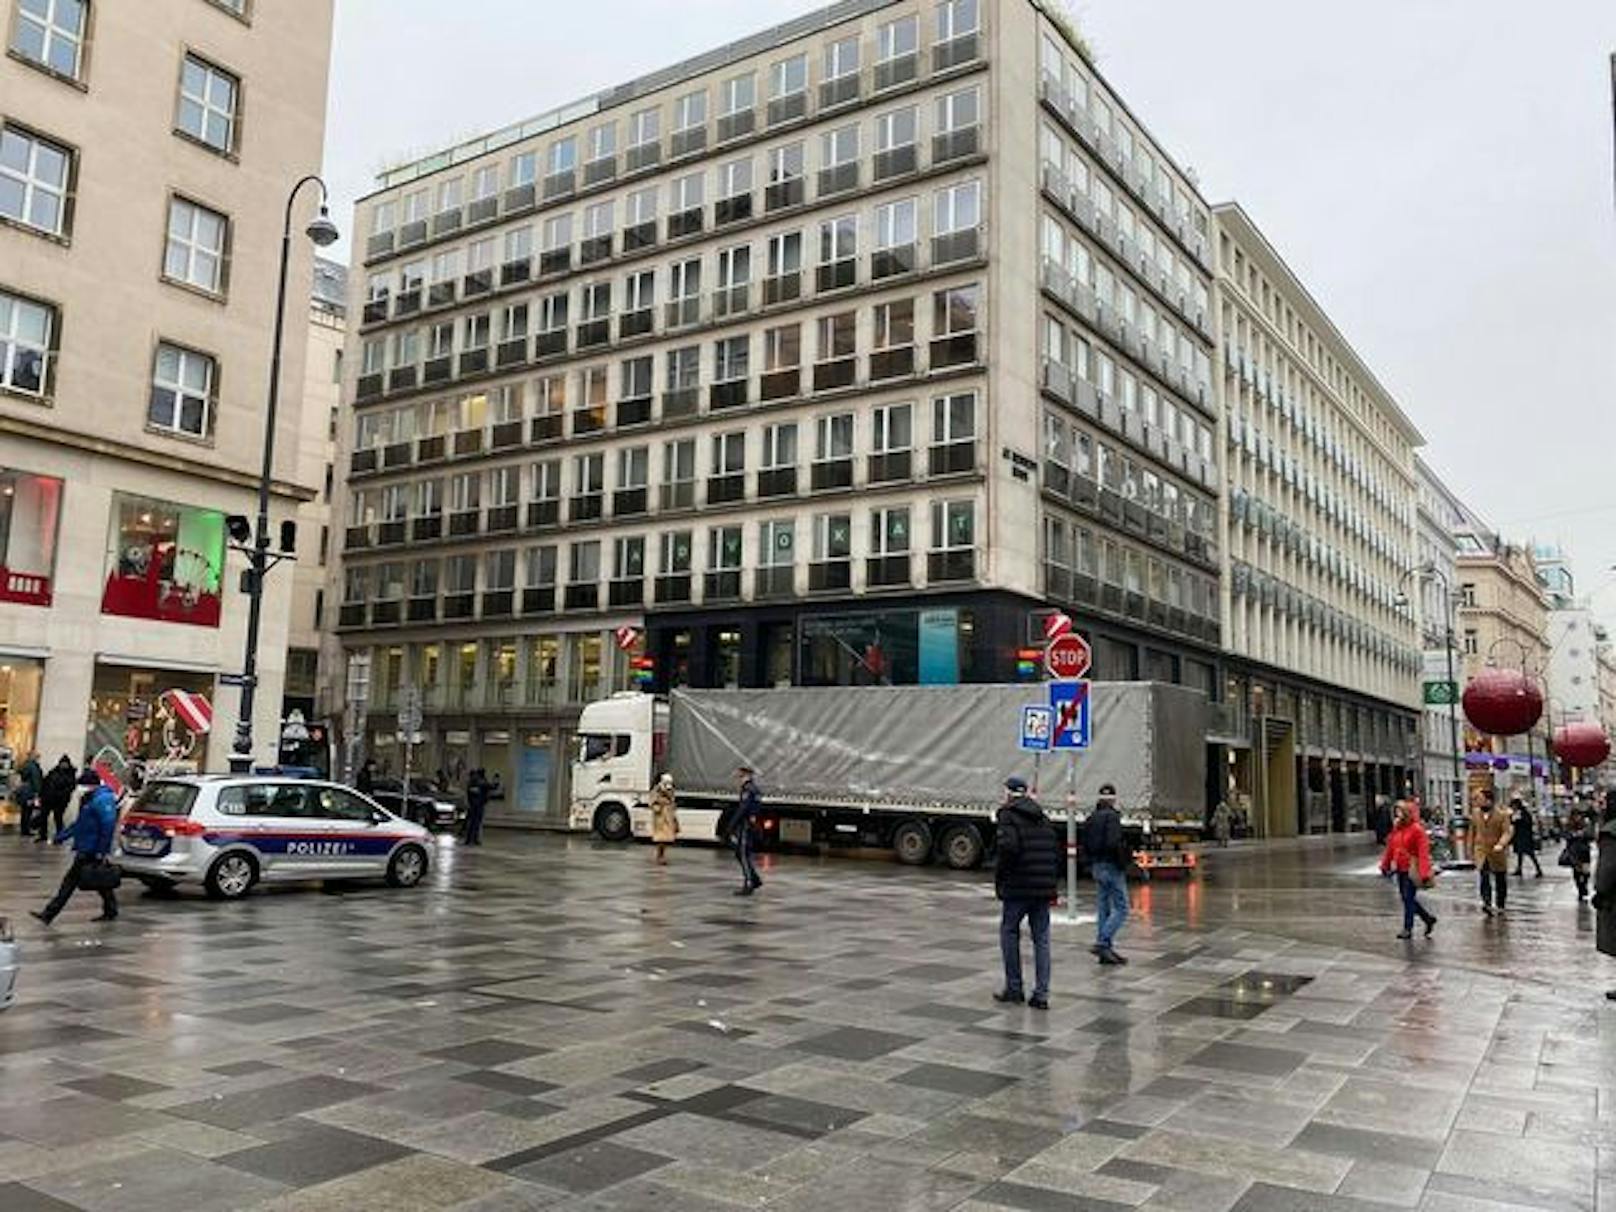 Lkw-Fahrer verirrte sich in Wiener City